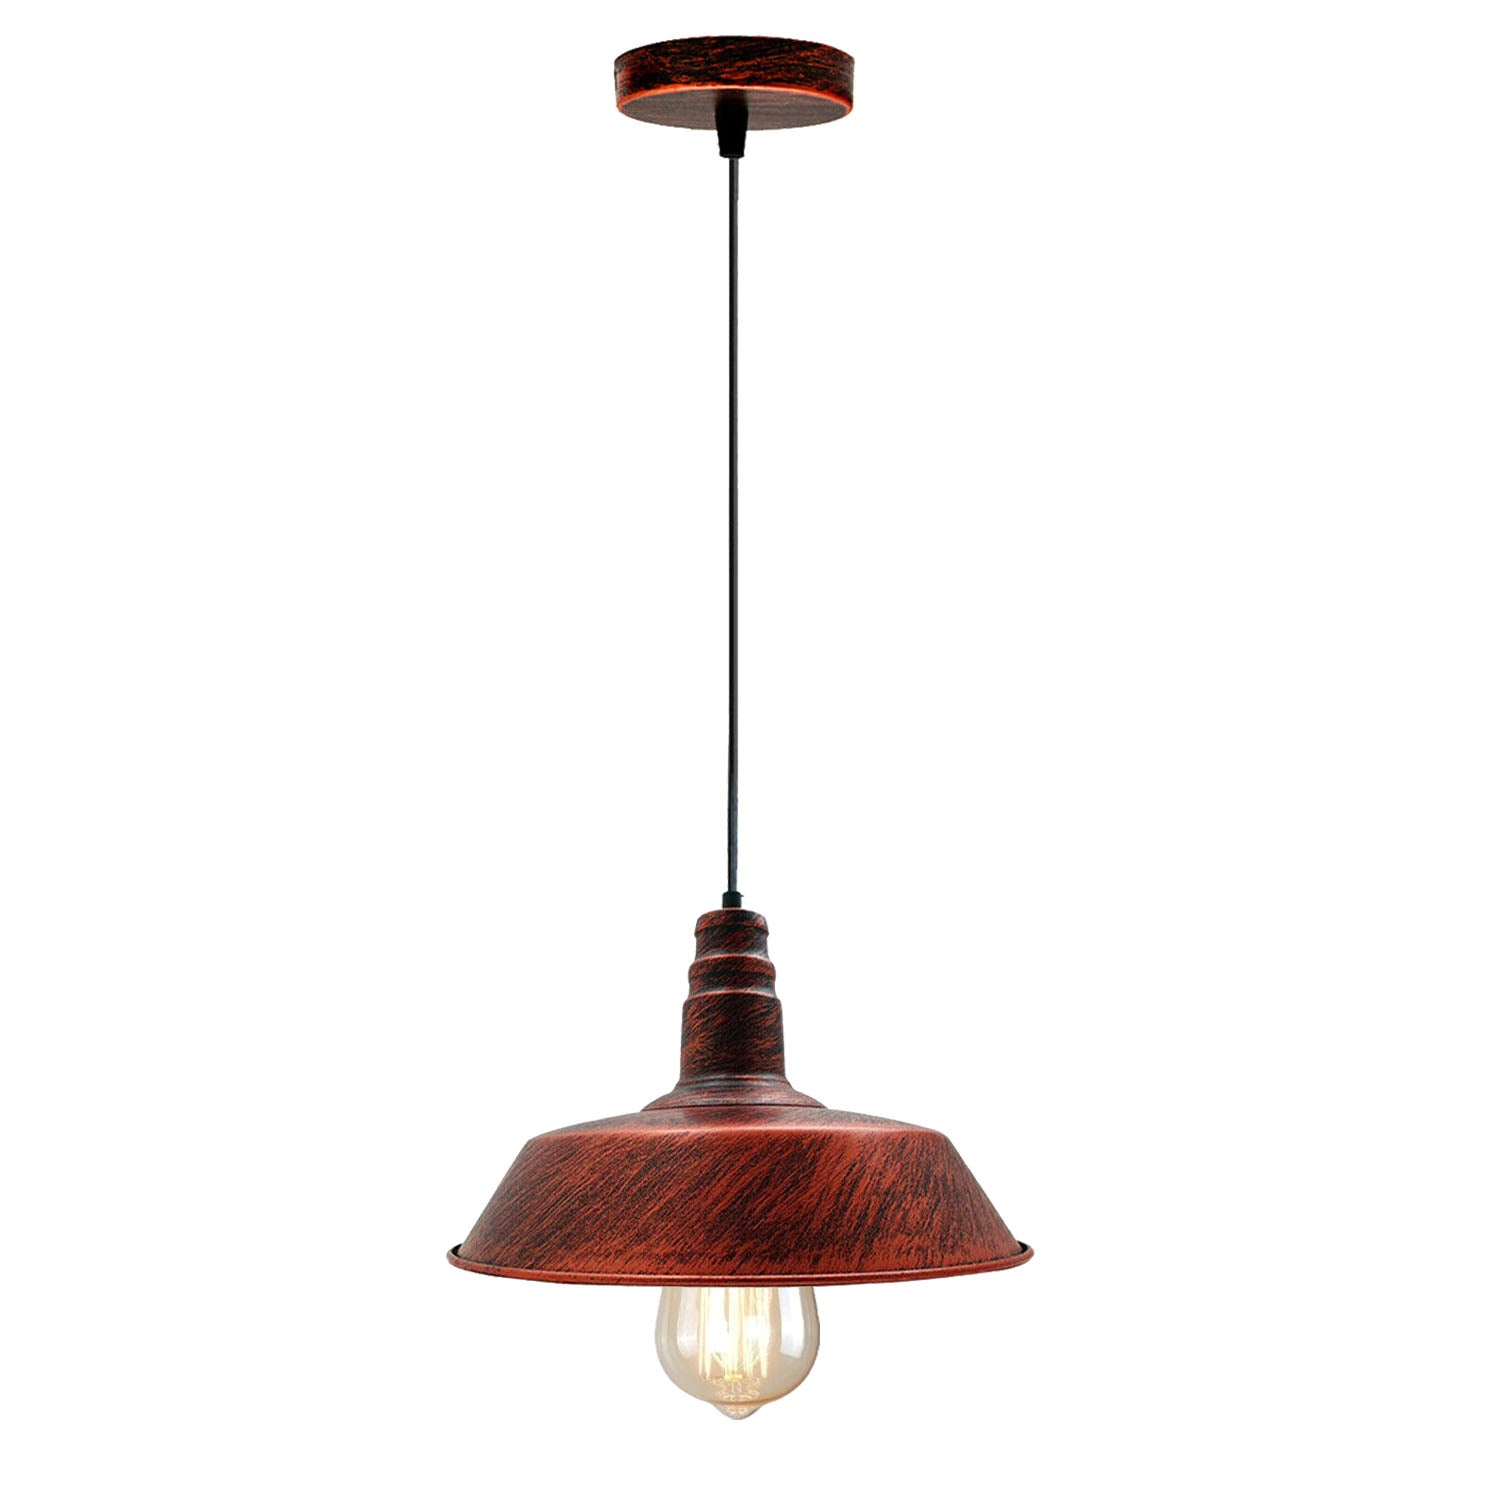 Retro Barn shape Metal Ceiling Lamp Shade Pendant Lights E27 lamp for Kitchen Home Living room Office Bar Restaurant